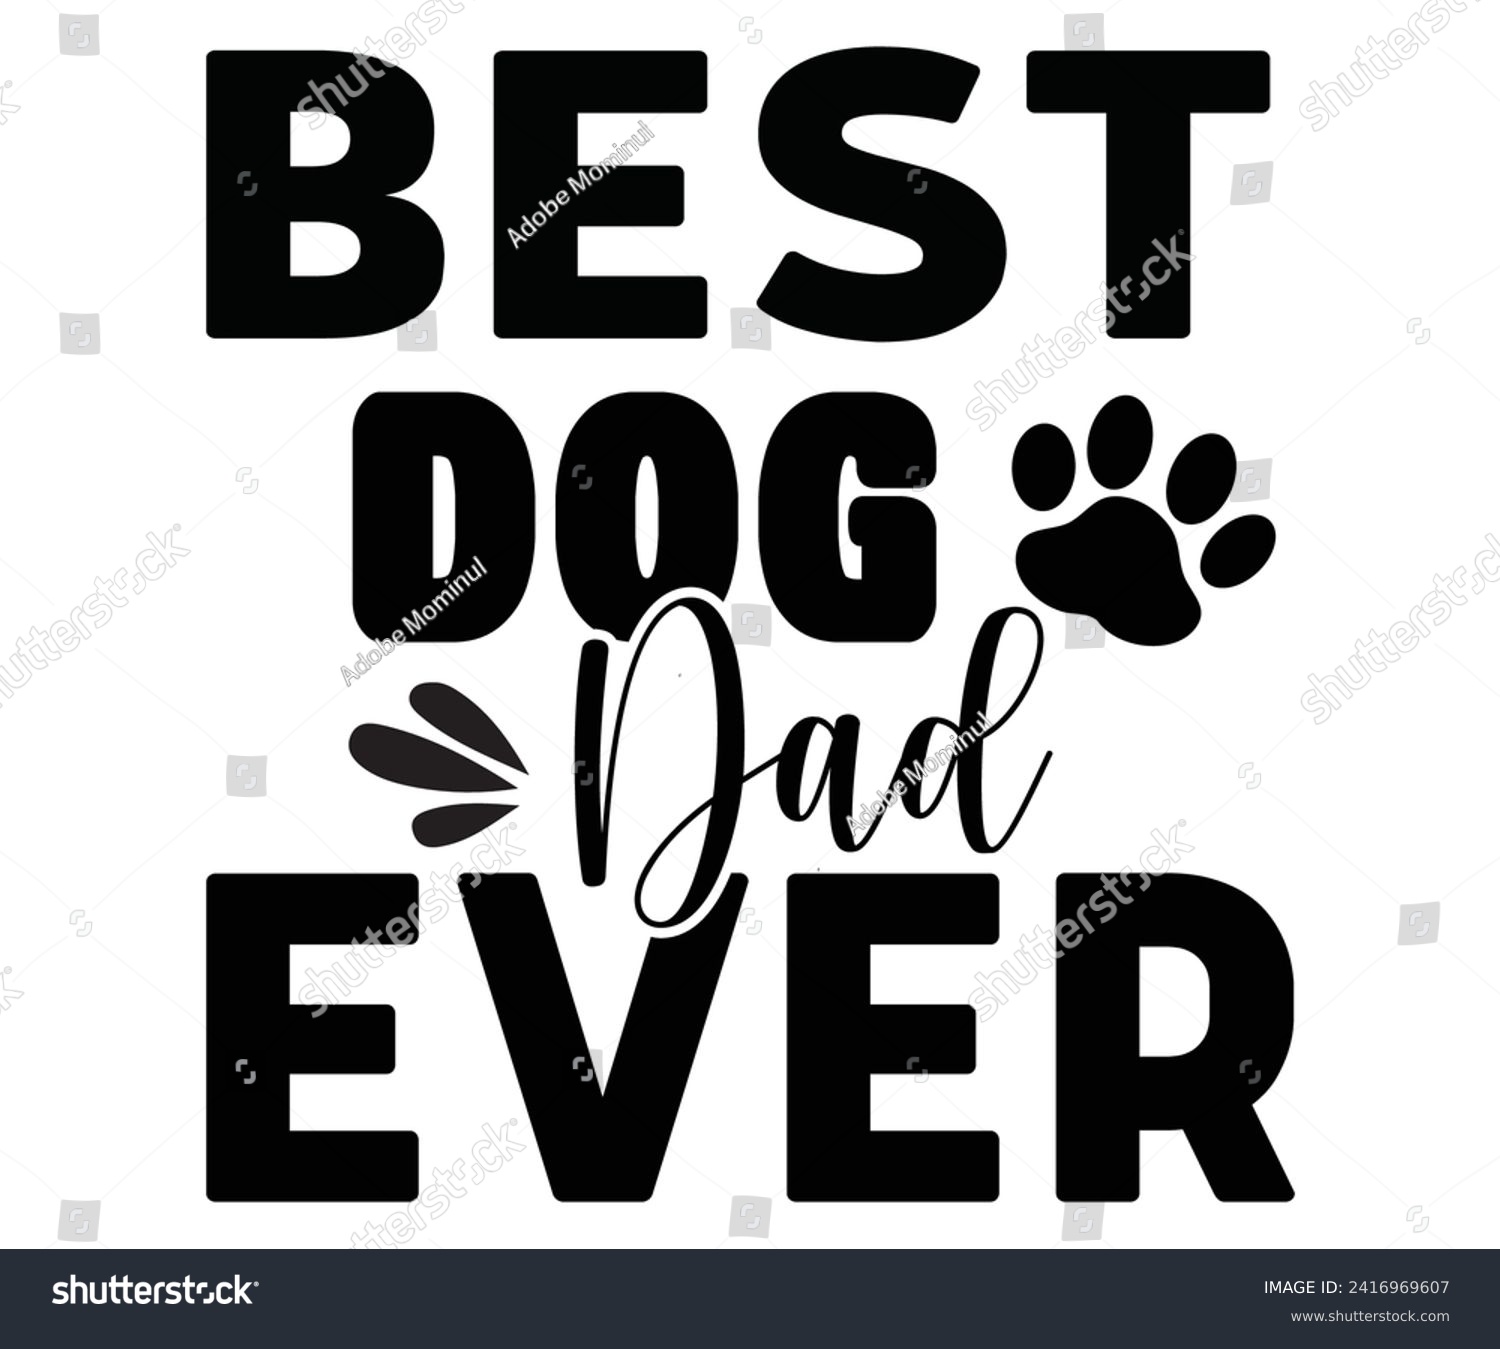 SVG of Best Dog Dad Ever Svg,Father's Day Svg,Papa svg,Grandpa Svg,Father's Day Saying Qoutes,Dad Svg,Funny Father, Gift For Dad Svg,Daddy Svg,Family Svg,T shirt Design,Svg Cut File,Typography svg